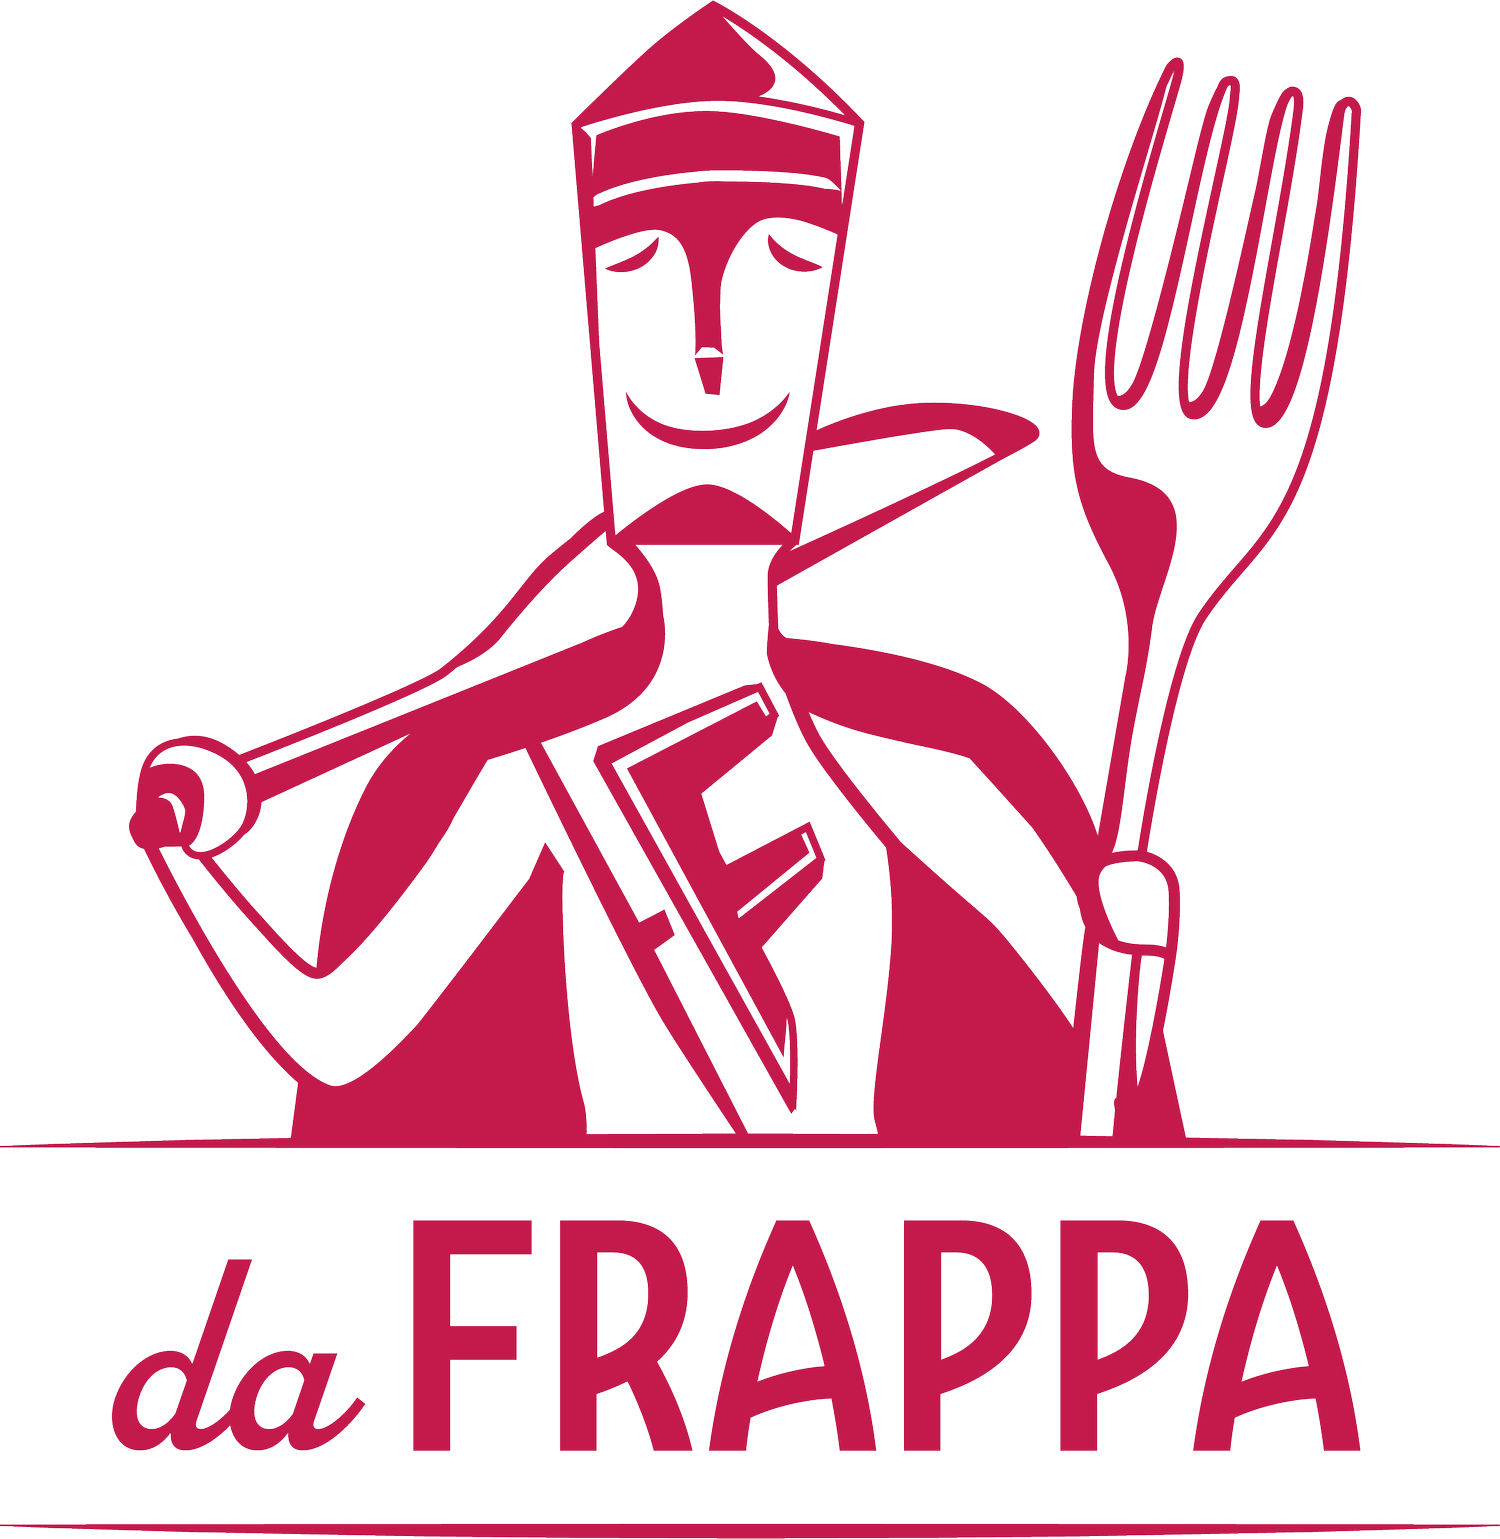 dafrappa